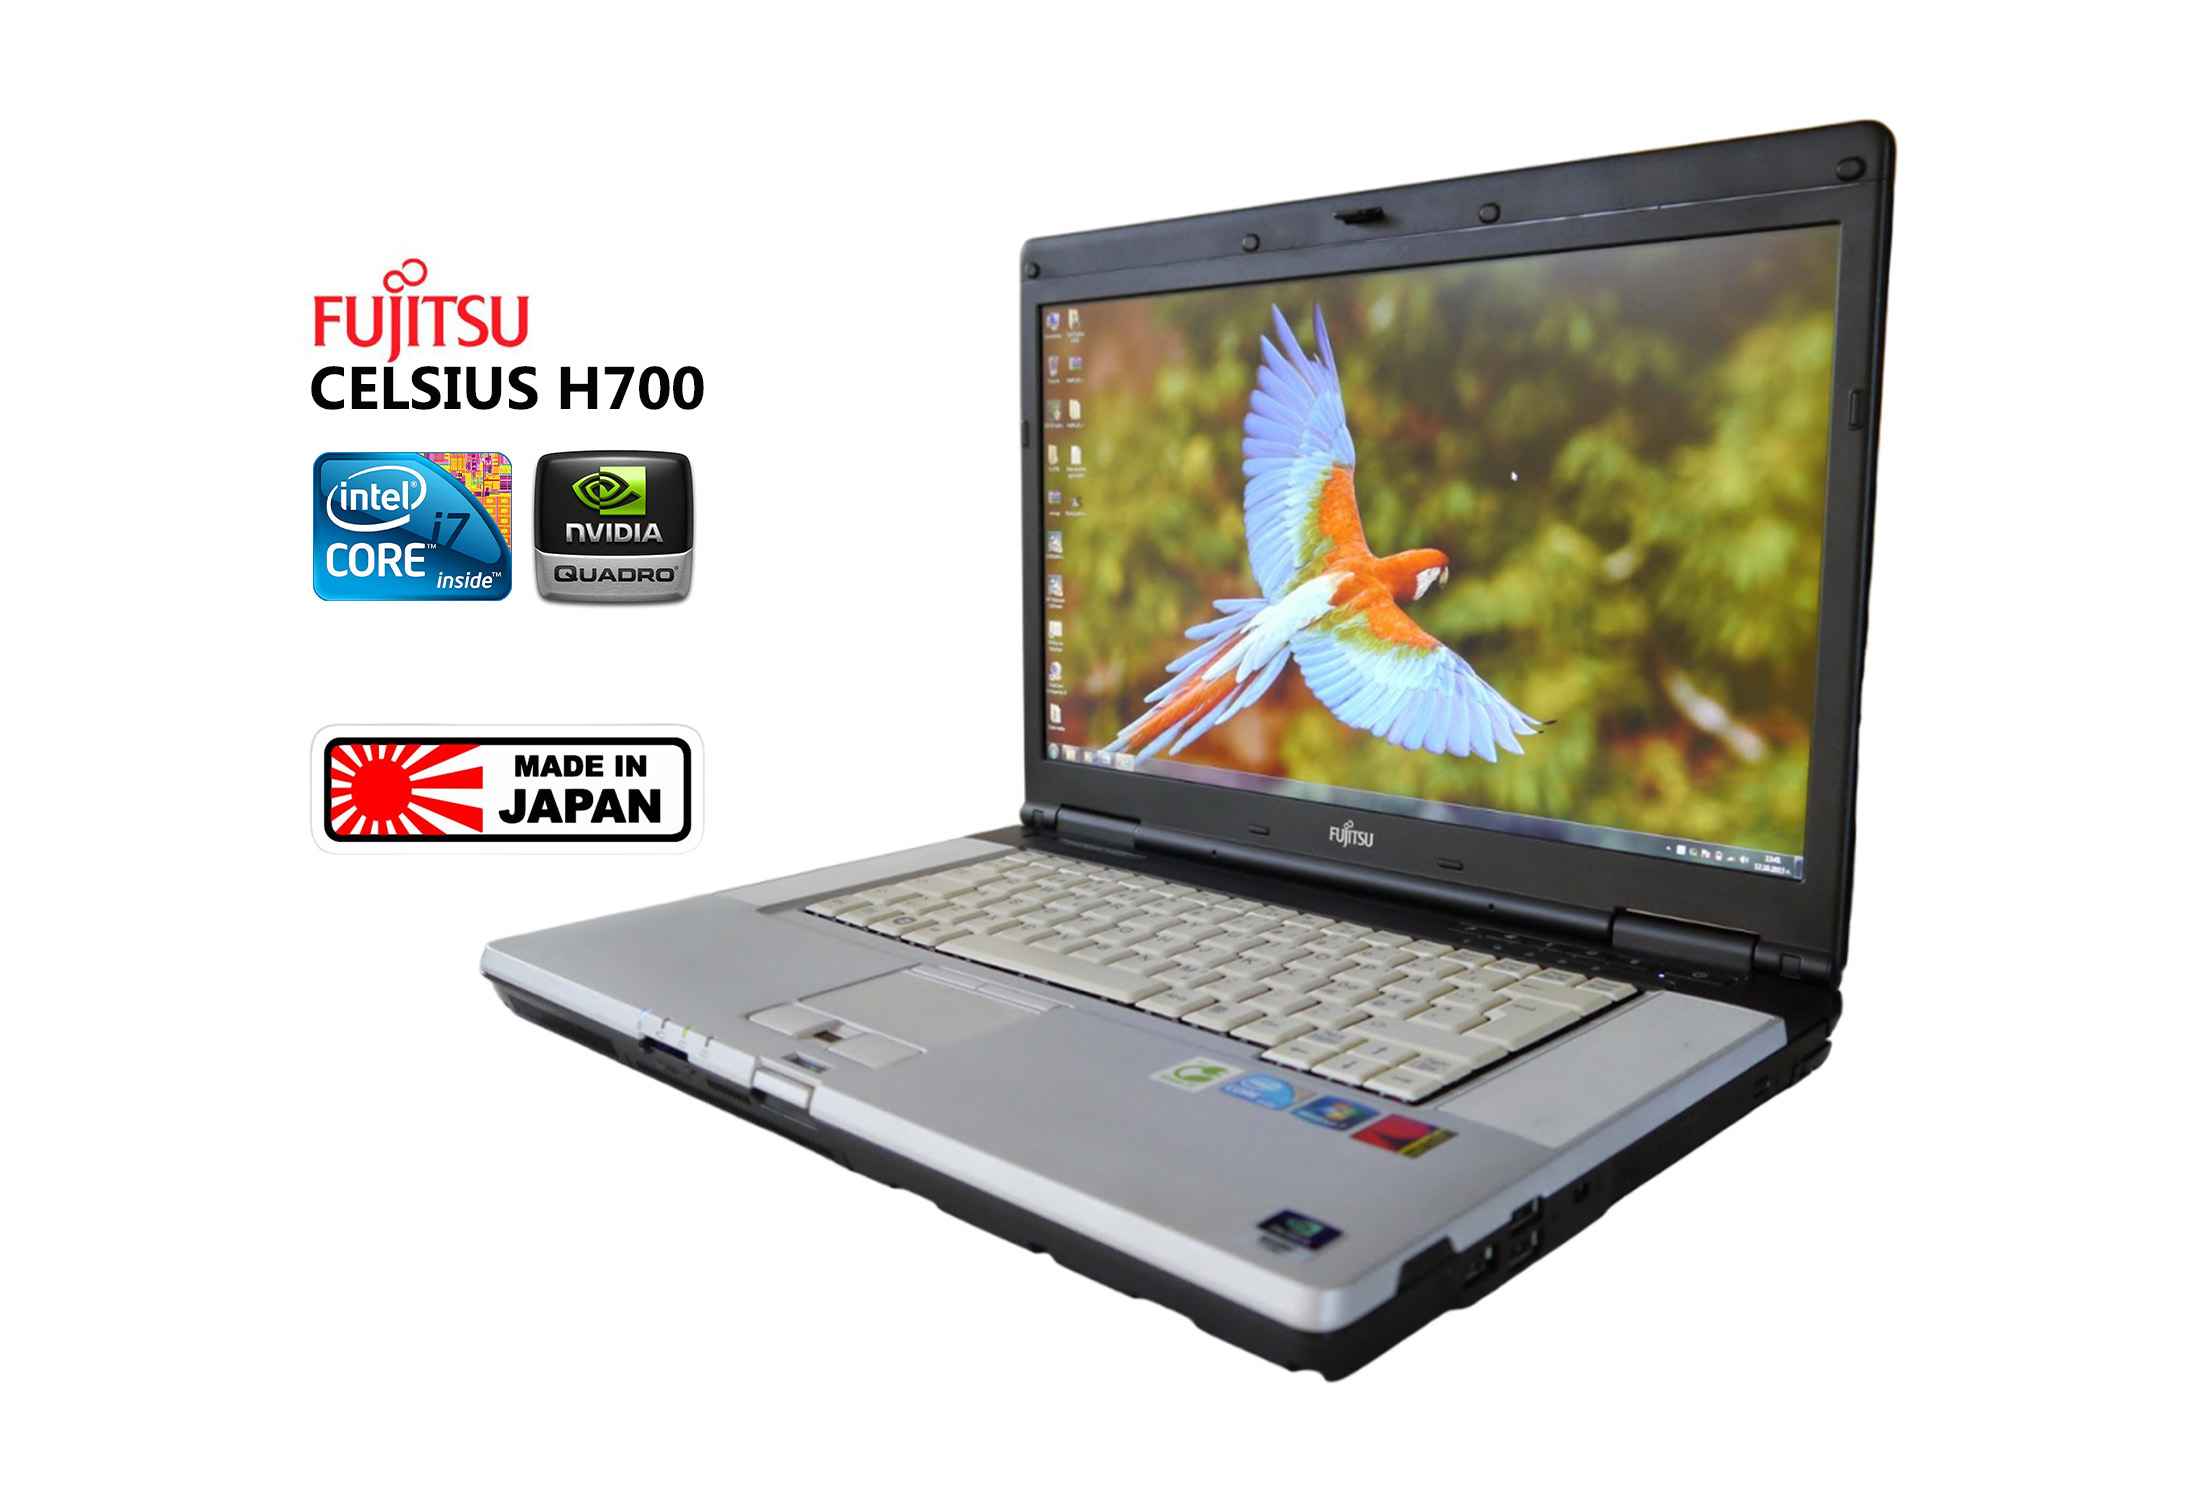 FUJITSU Celsius H700 i7-620M 8GB RAM  FHD Quadro FX880M